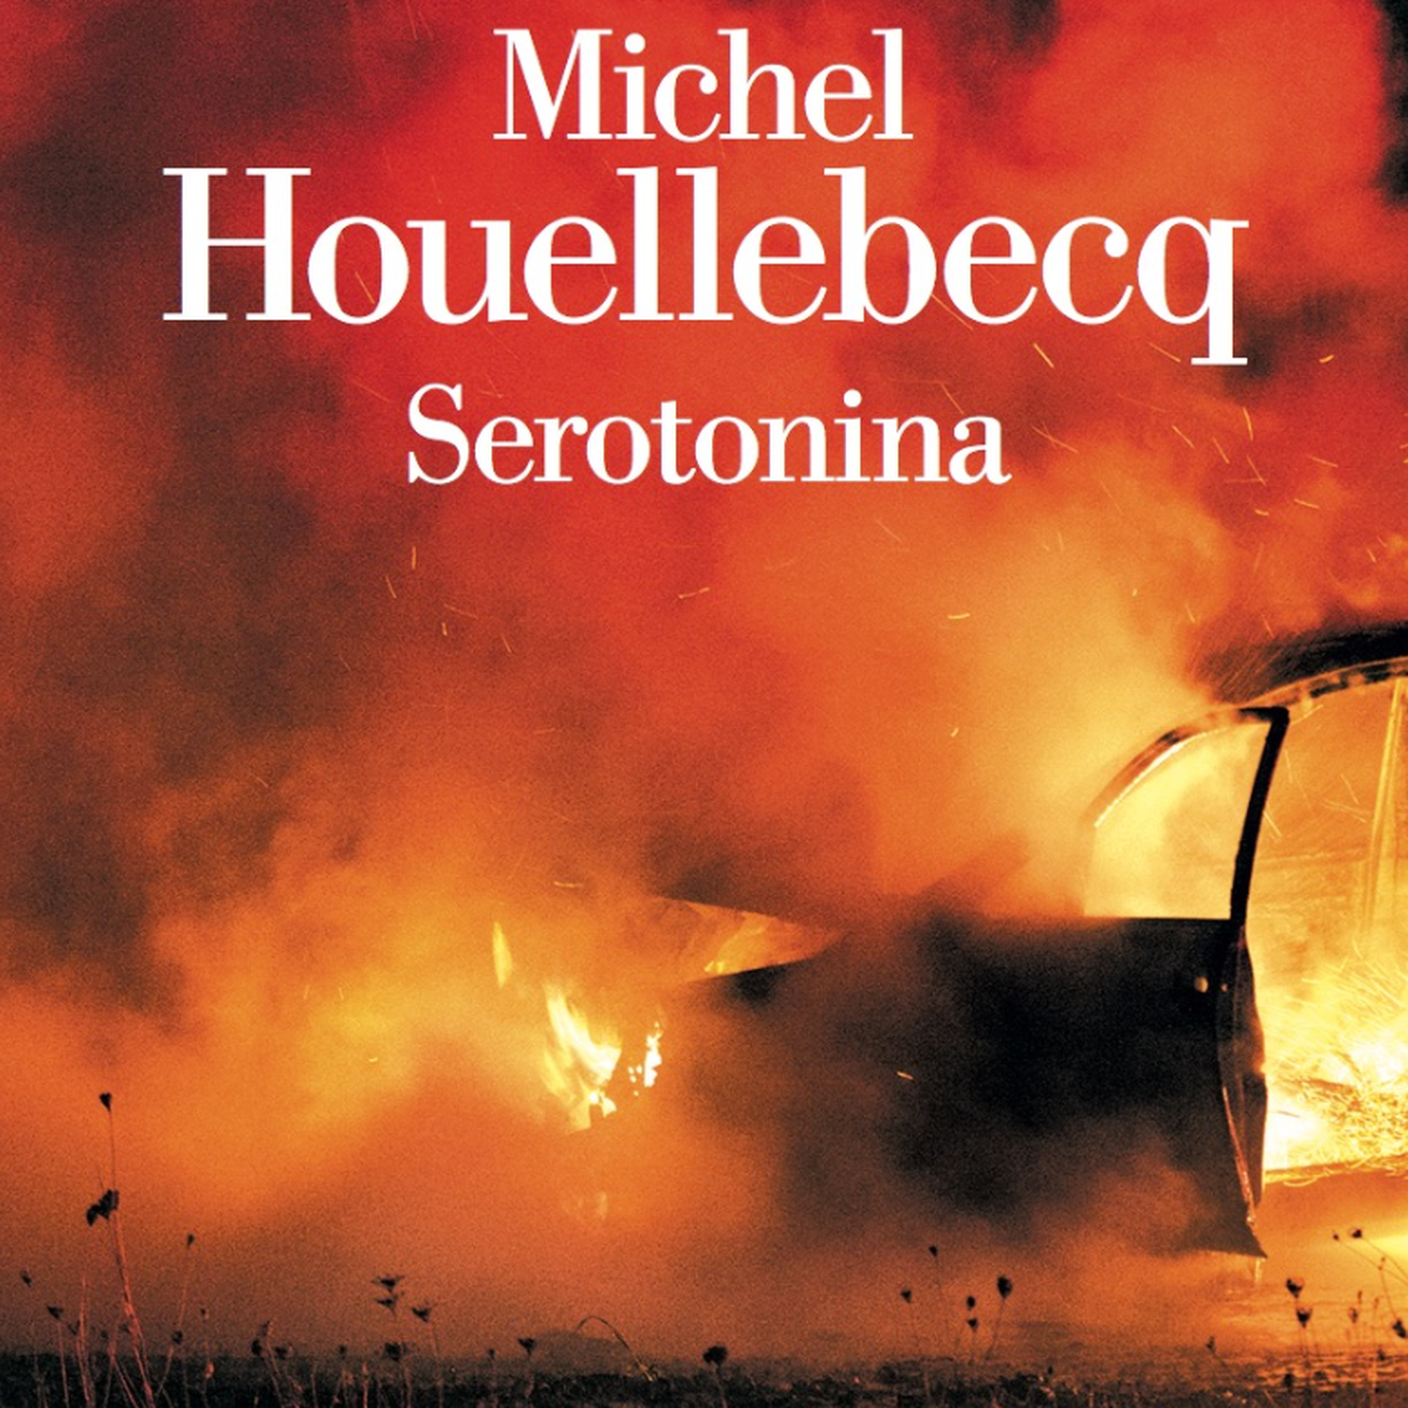 Michel Houellebecq, "Serotonina", La nave di Teseo (dettaglio copertina)